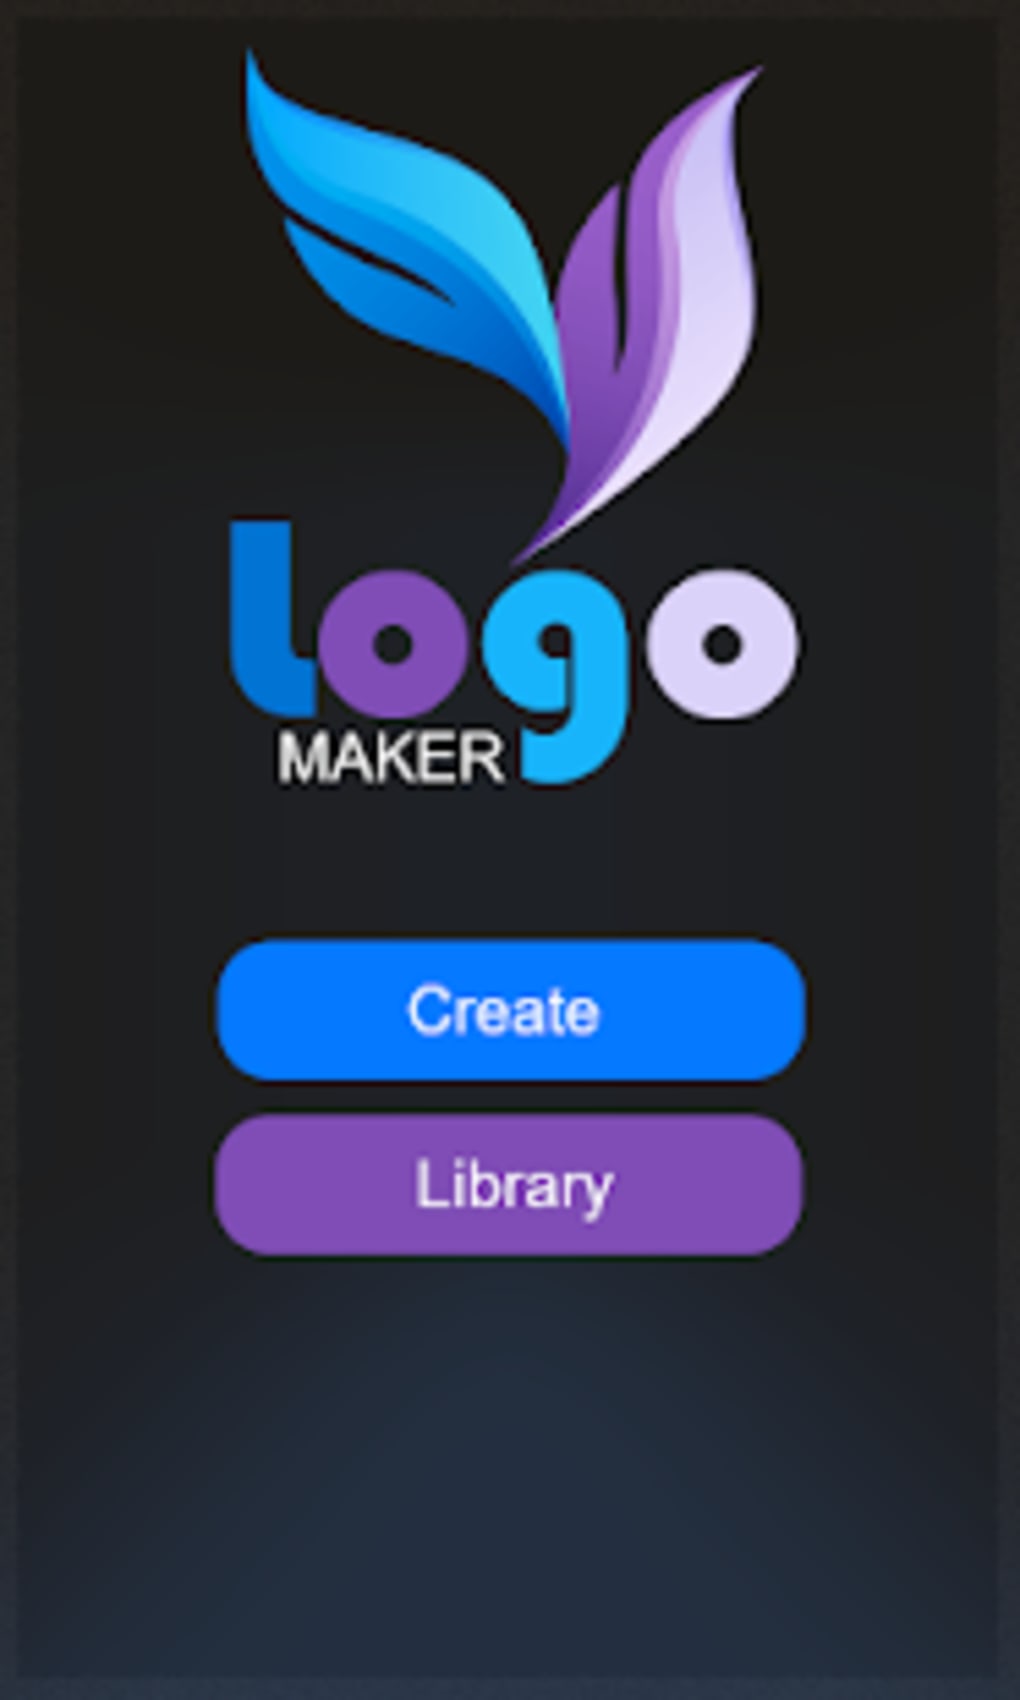 free logo maker software online